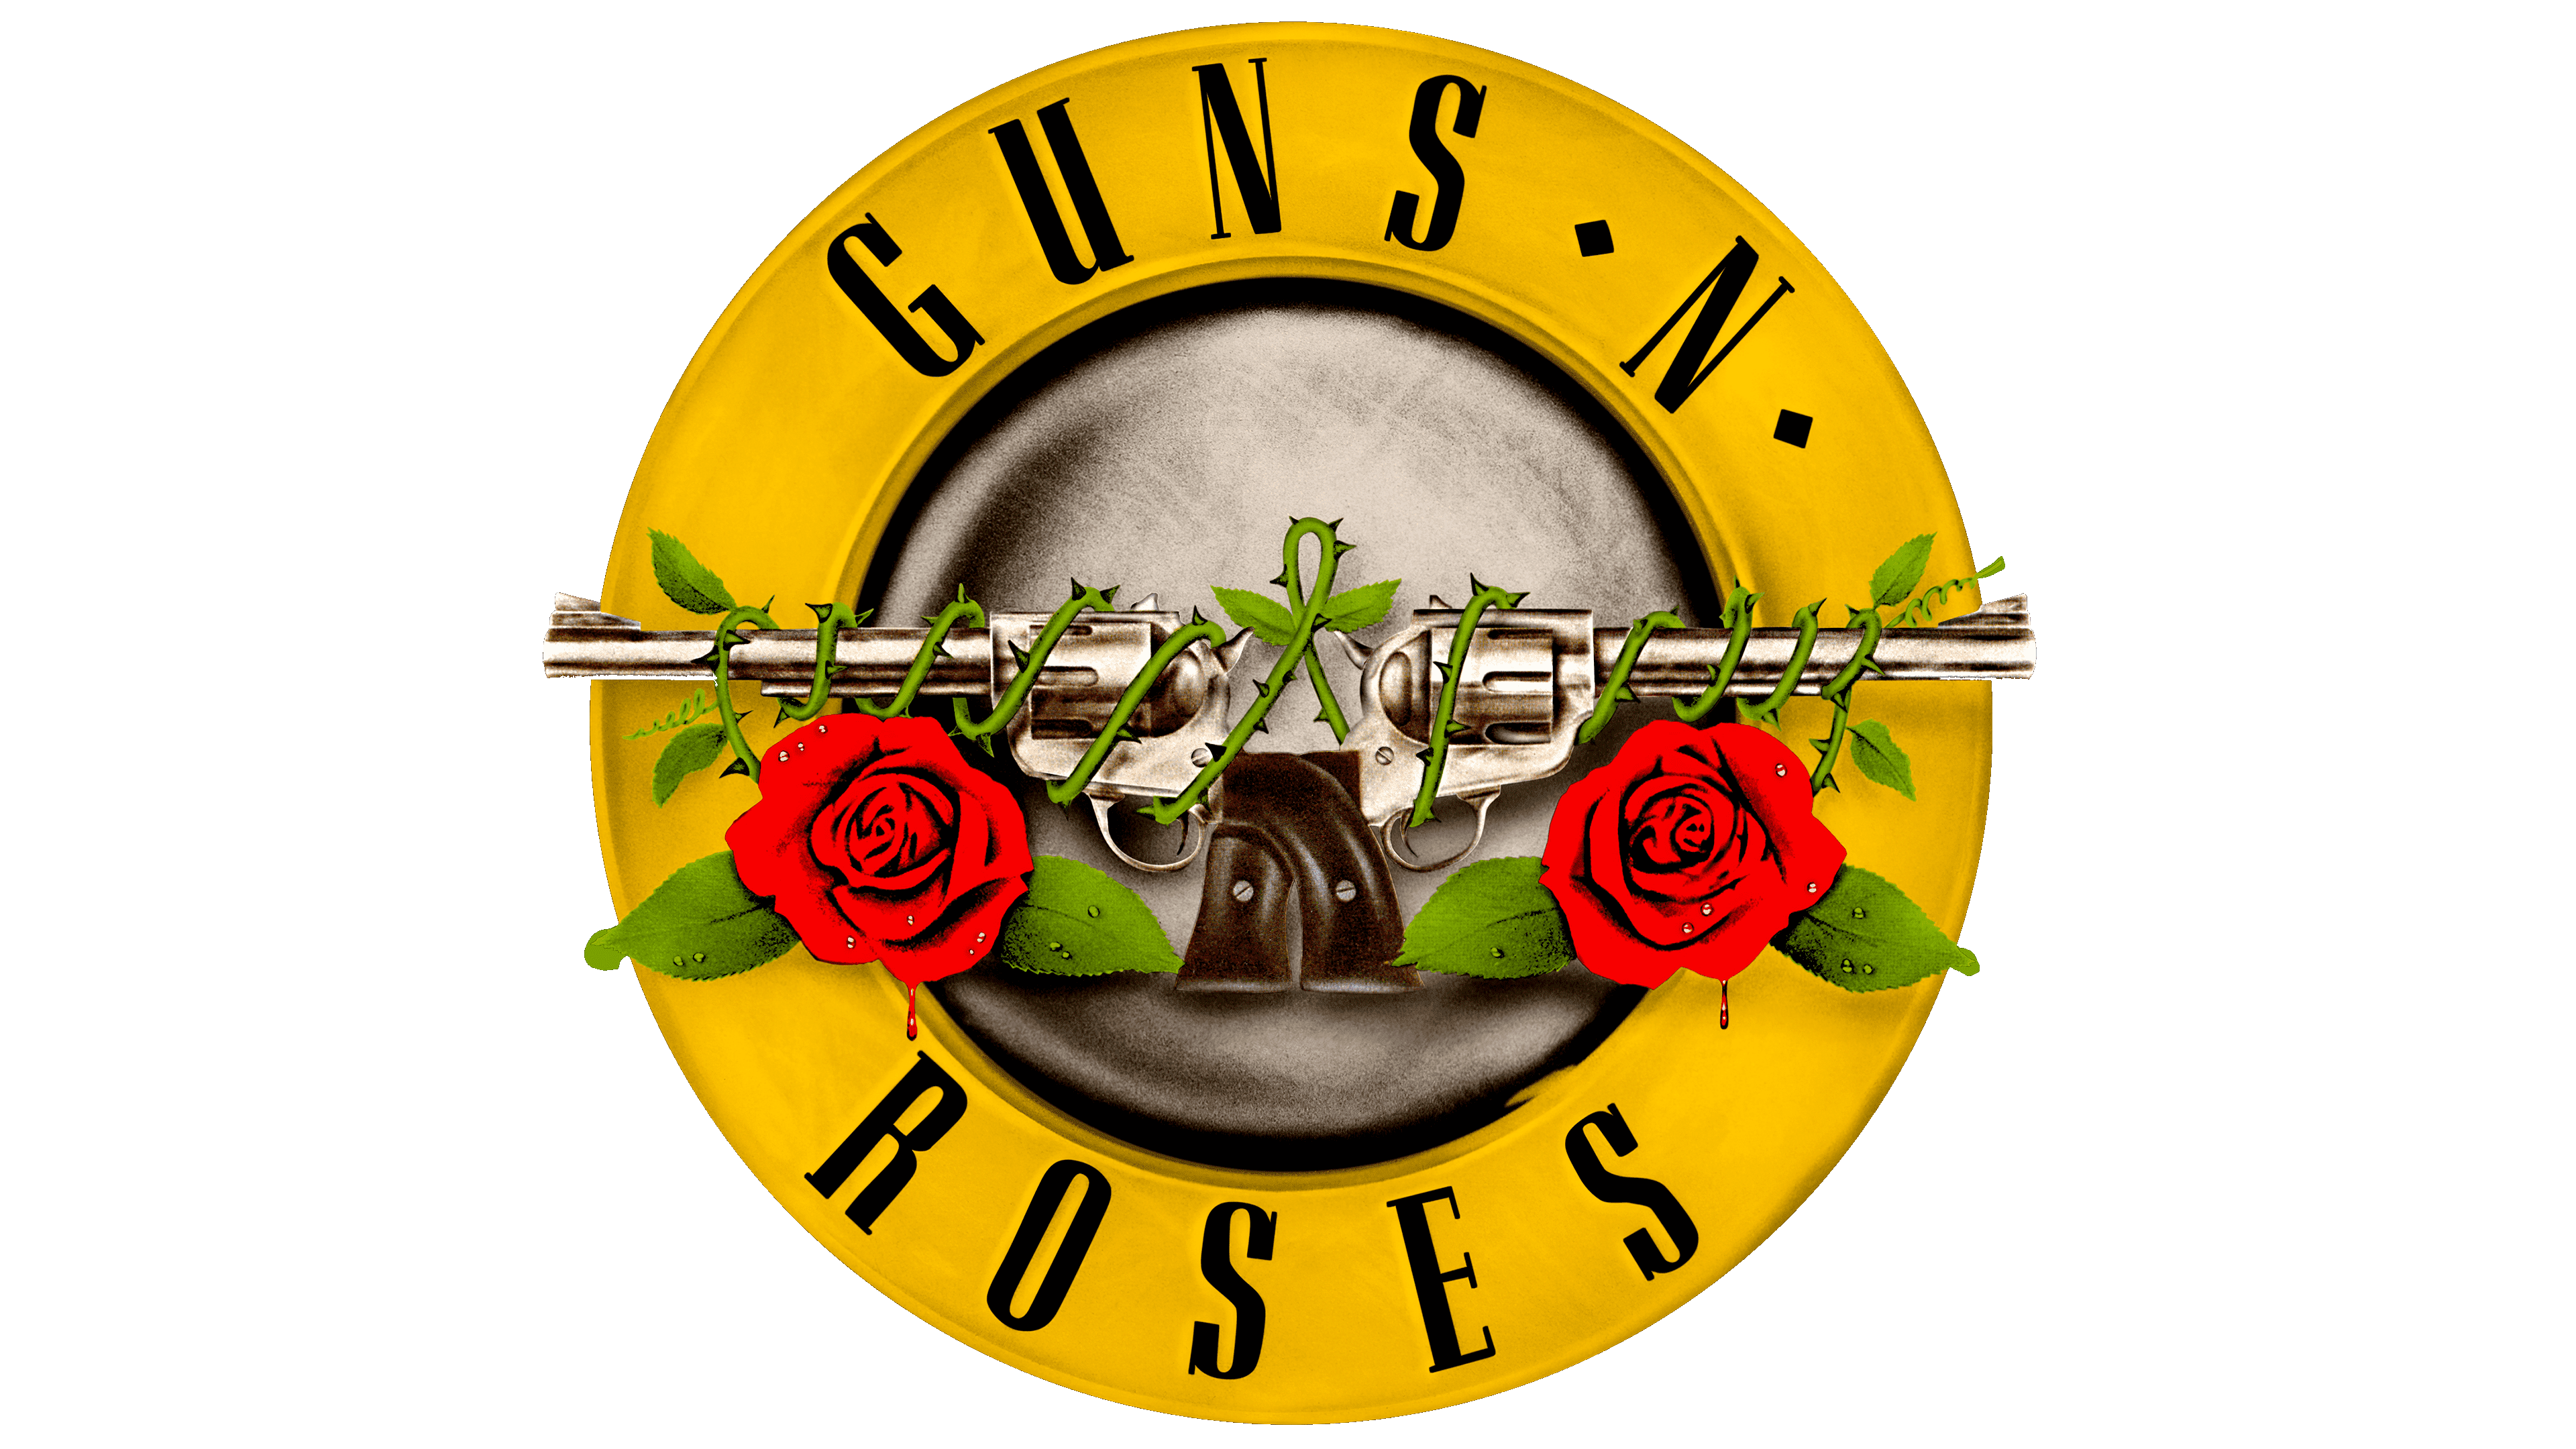 Guns N' Roses Logo